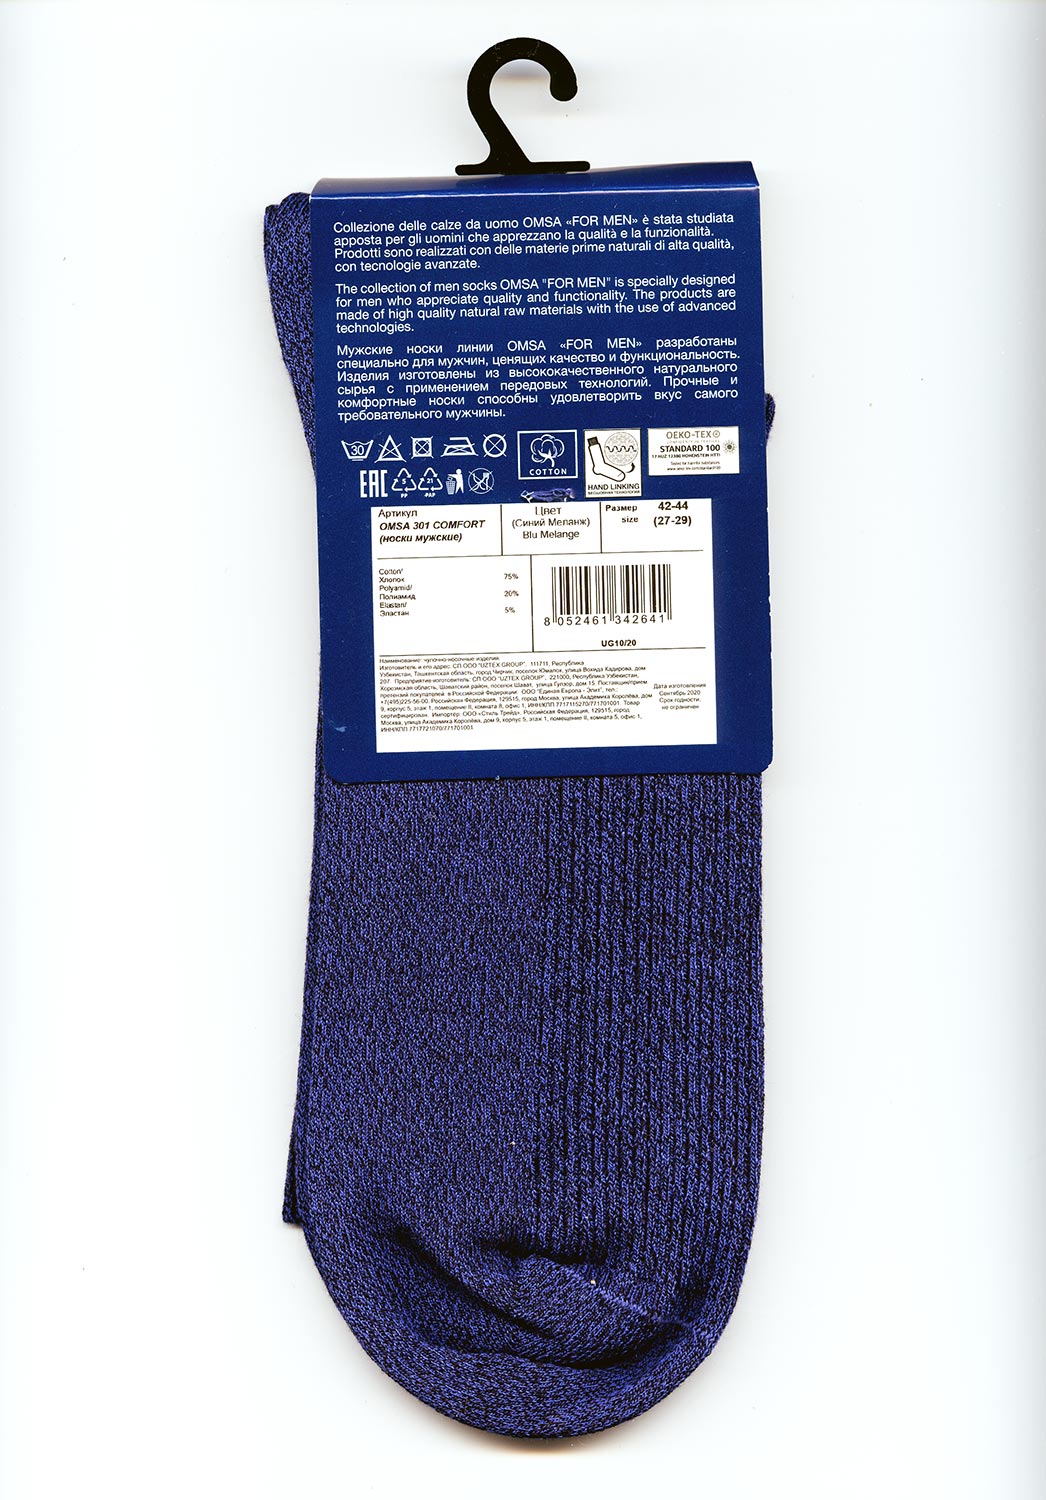 Состав пряжи носков Omsa 301 Comfort преимущественно натуральный: 75% хлопка, 20% полиамида и 5% эластана ©bracatuS 